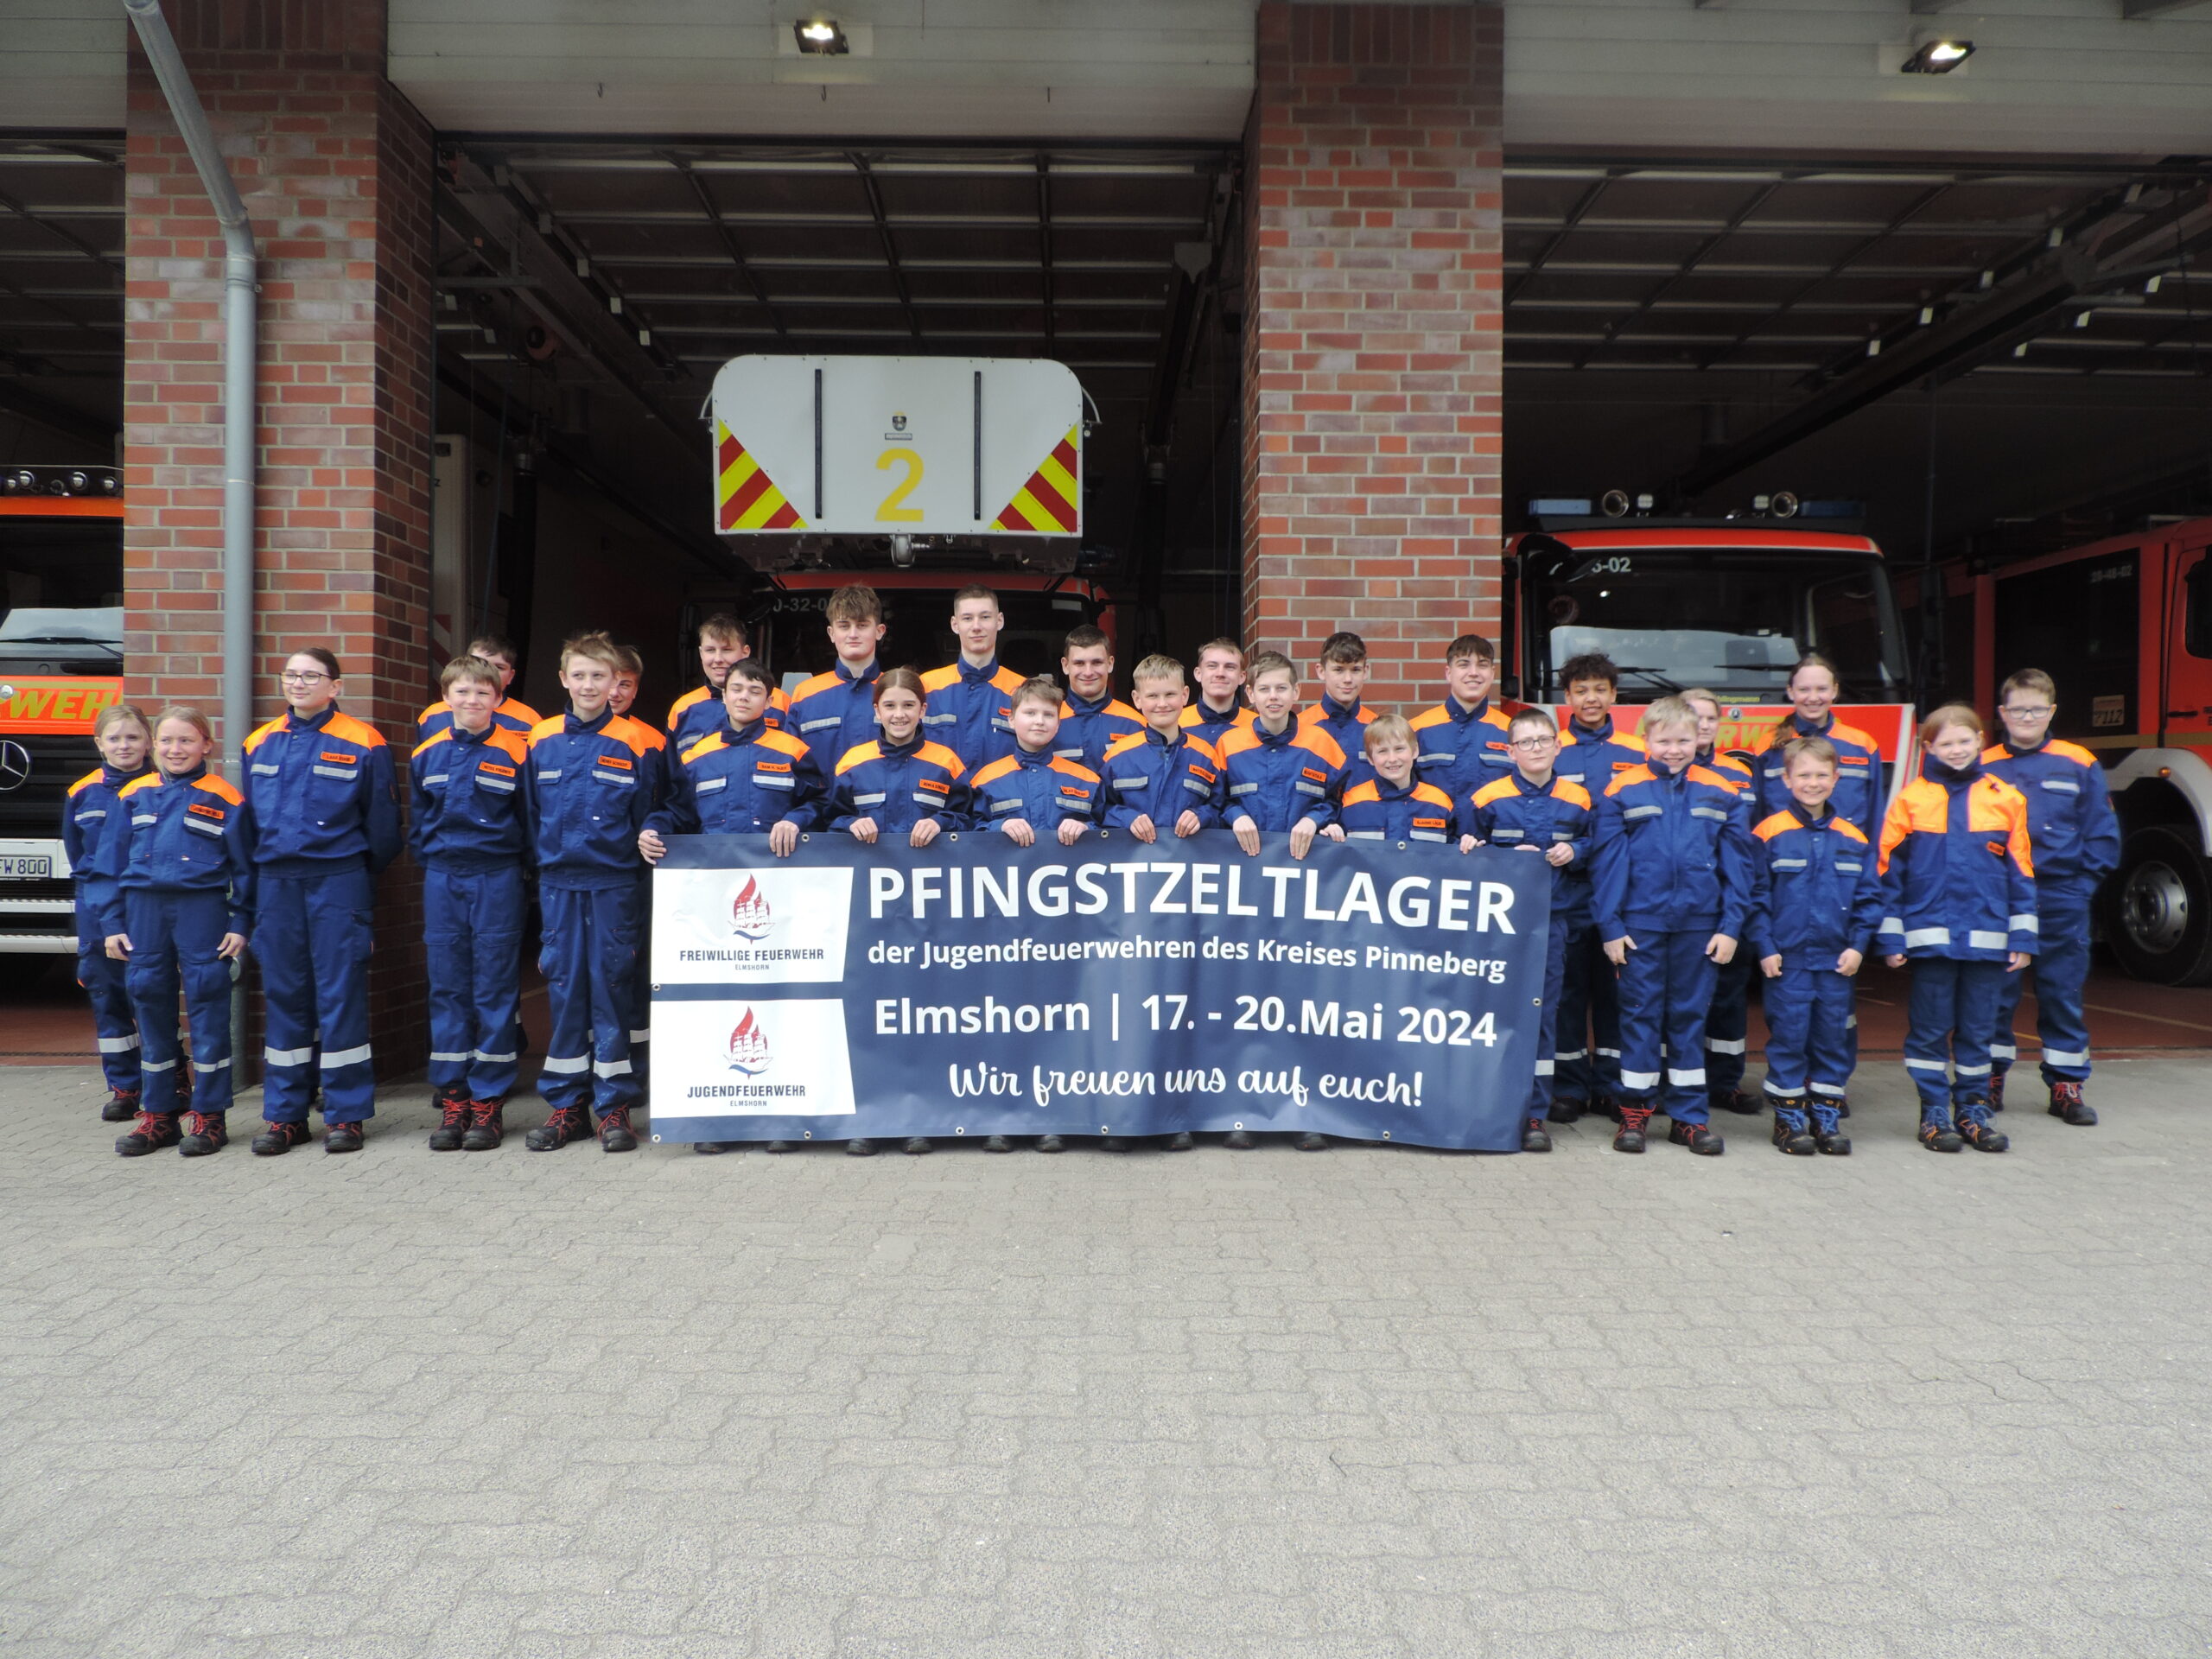 Pinneberg: 800 Kinder und Jugendliche der Feuerwehren im Kreis freuen sich auf Pfingstzeltlager